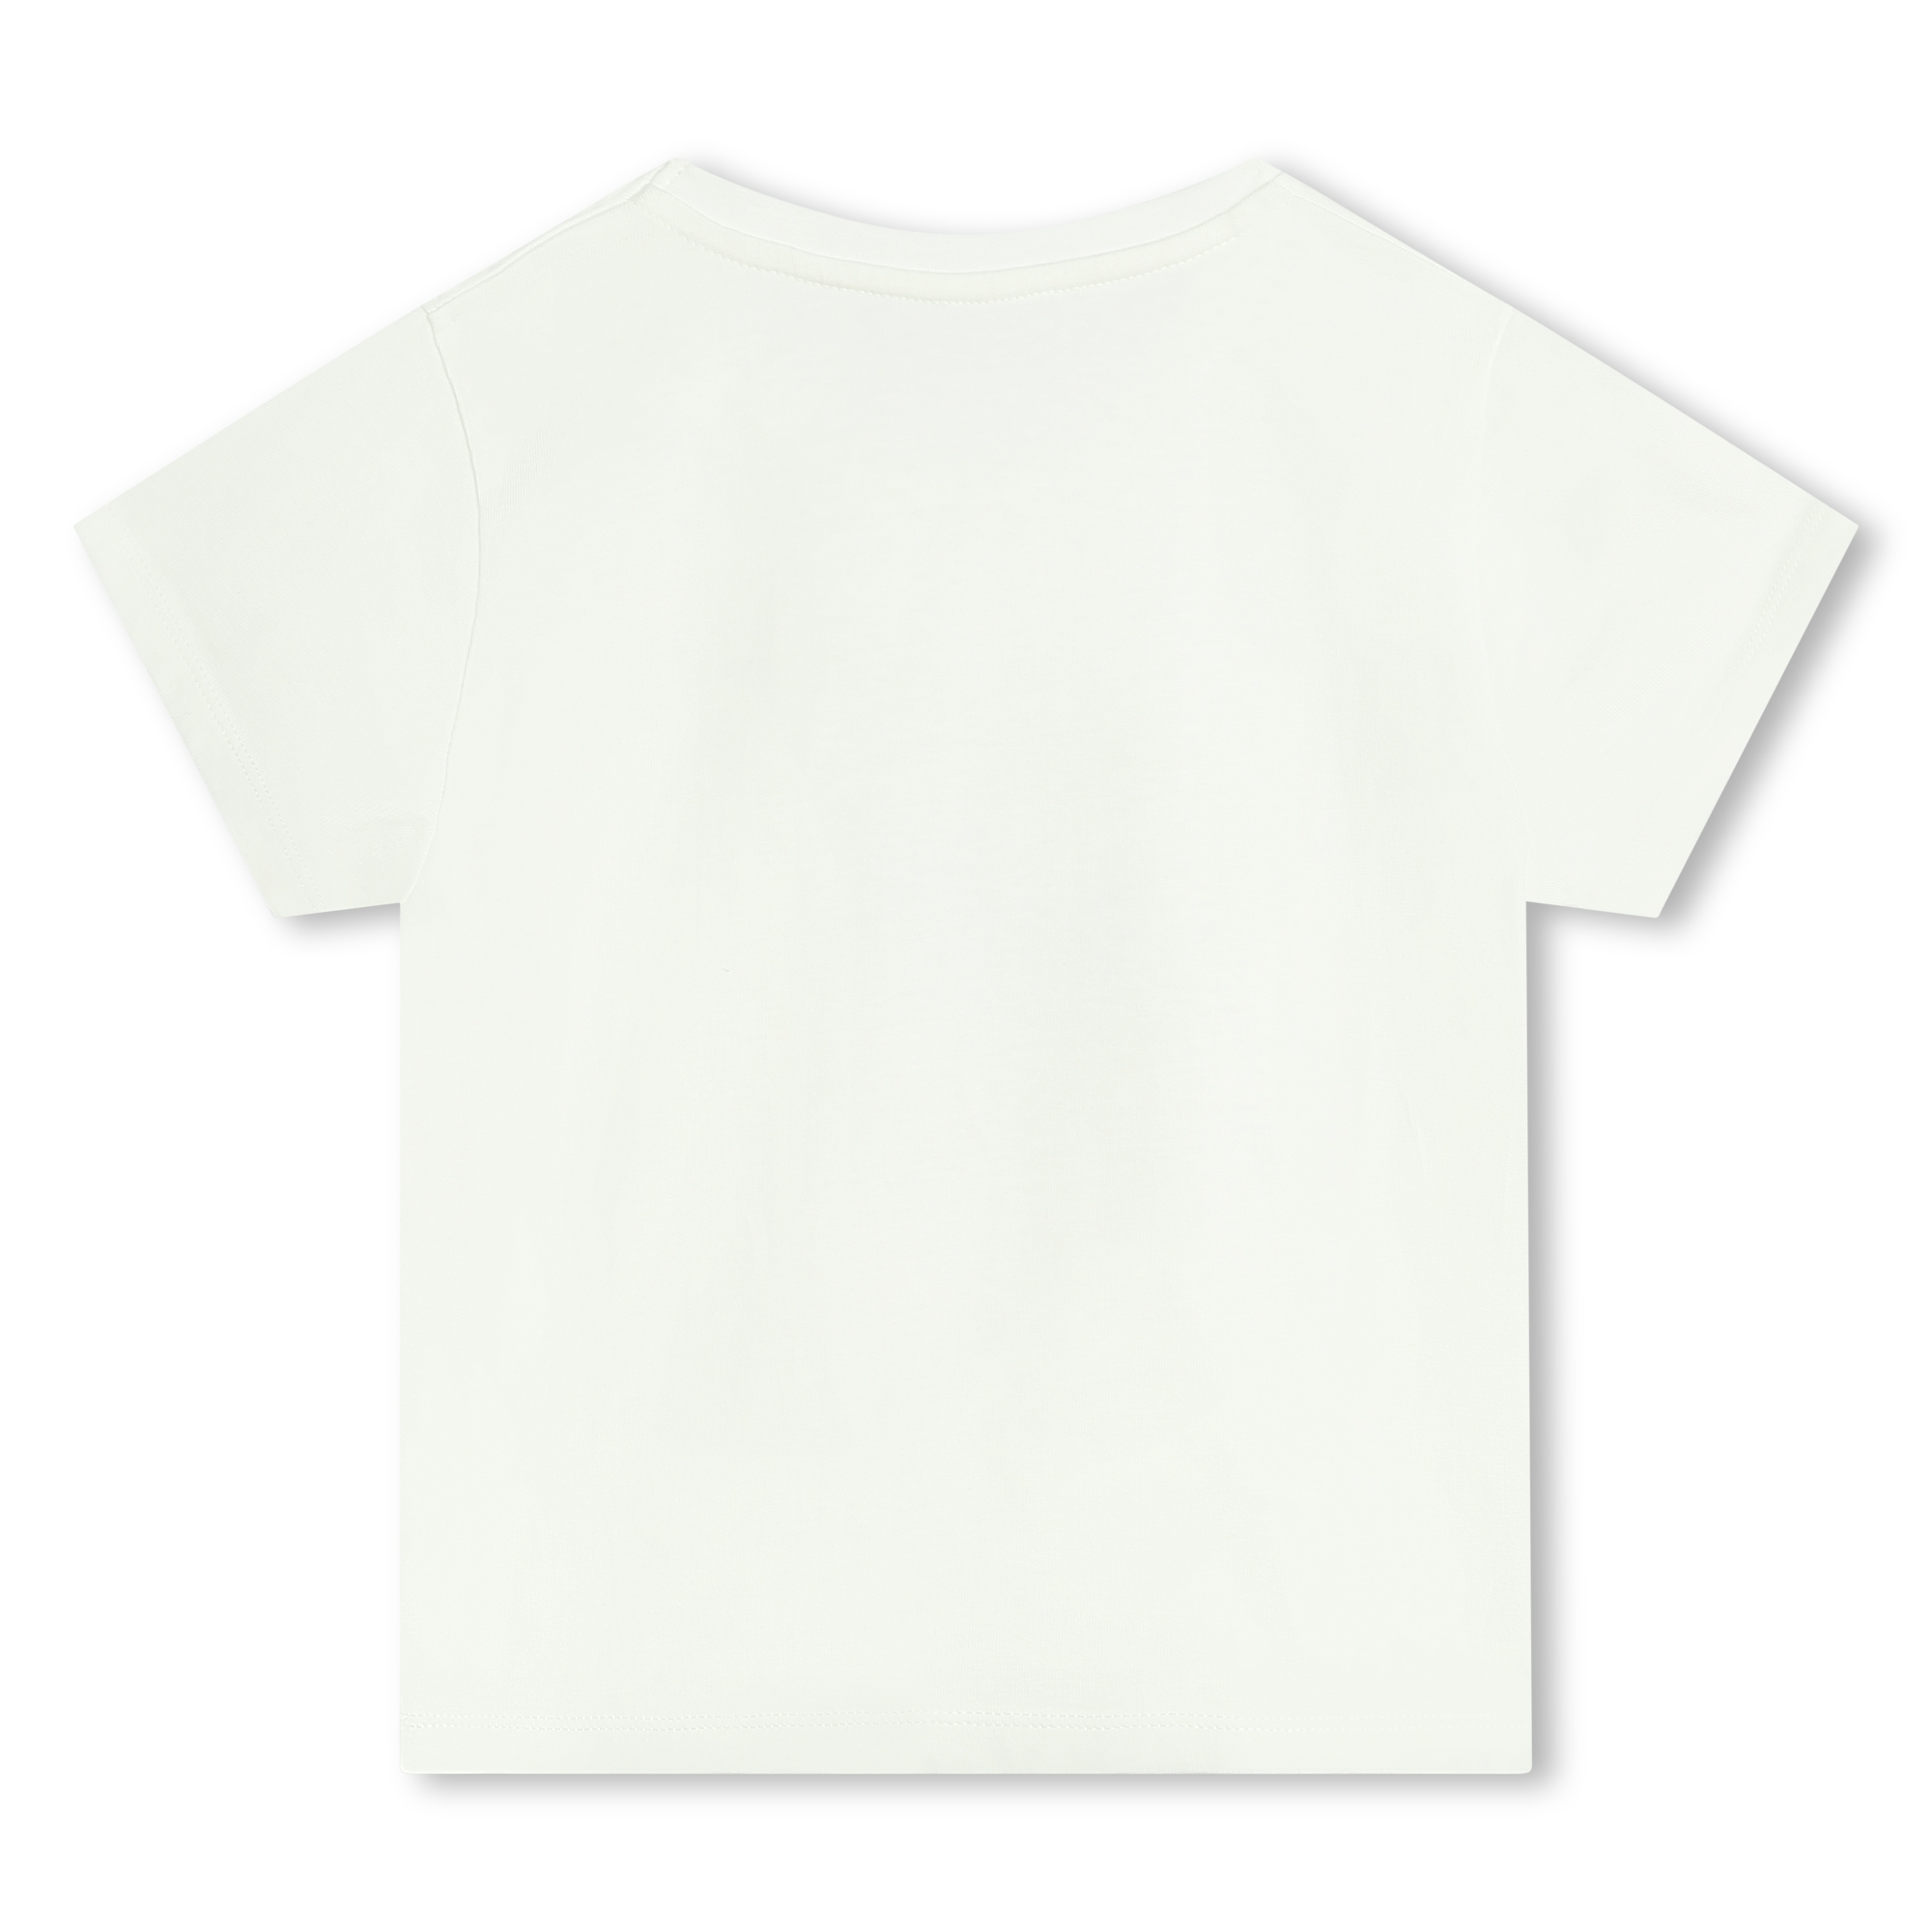 Katoenen T-shirt met opdruk MICHAEL KORS Voor